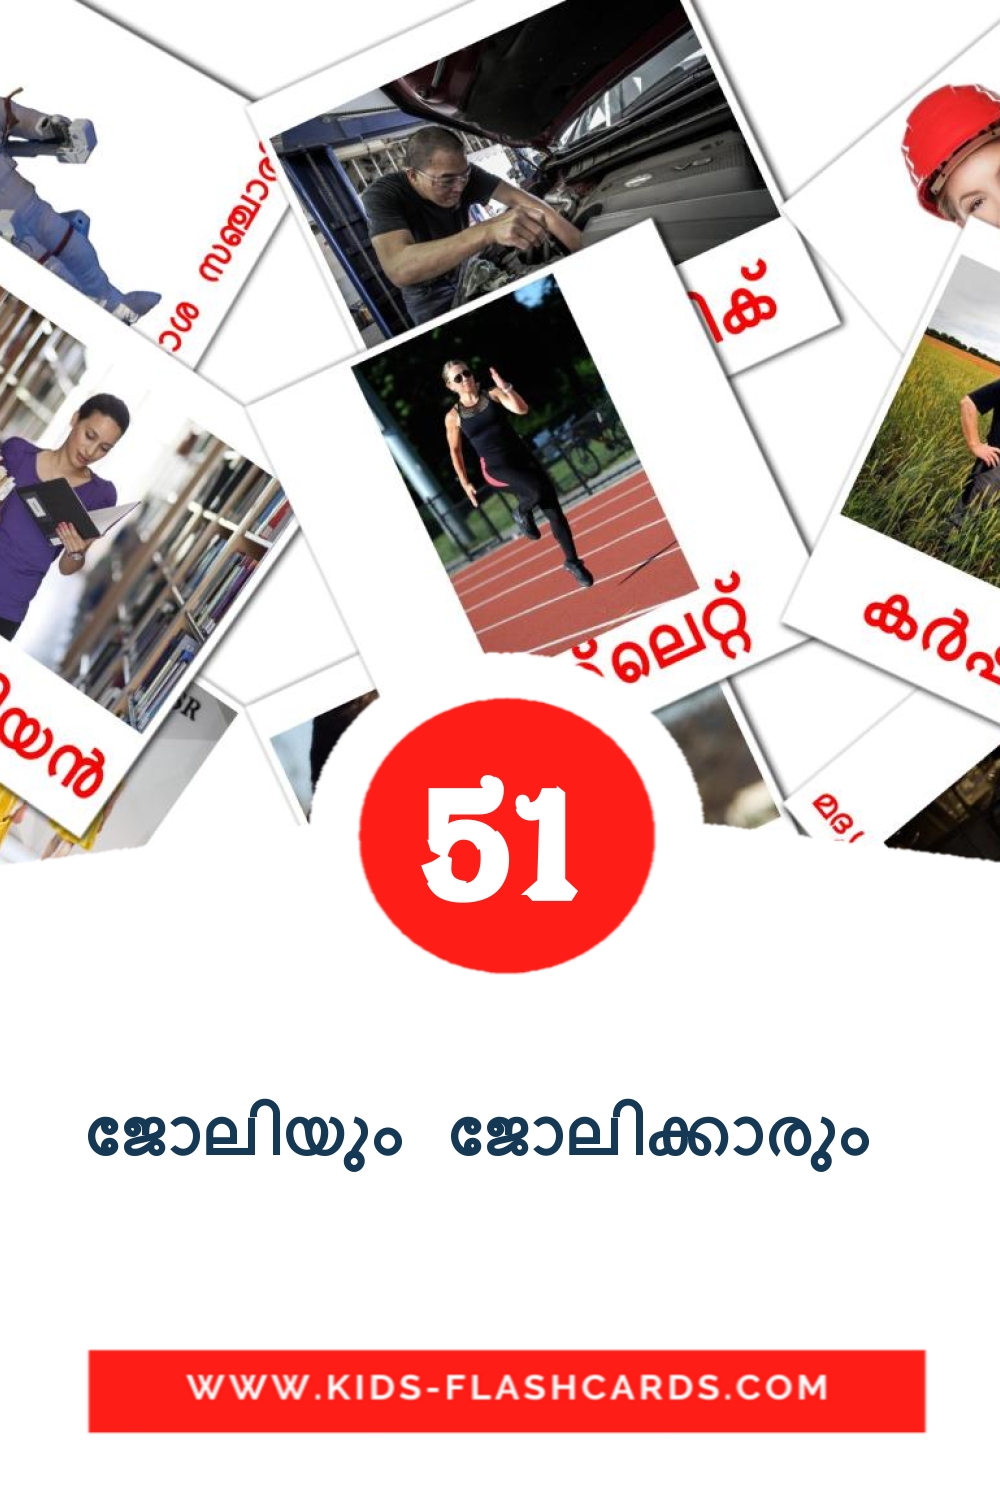 51 tarjetas didacticas de ജോലിയും ജോലിക്കാരും  para el jardín de infancia en malayalam